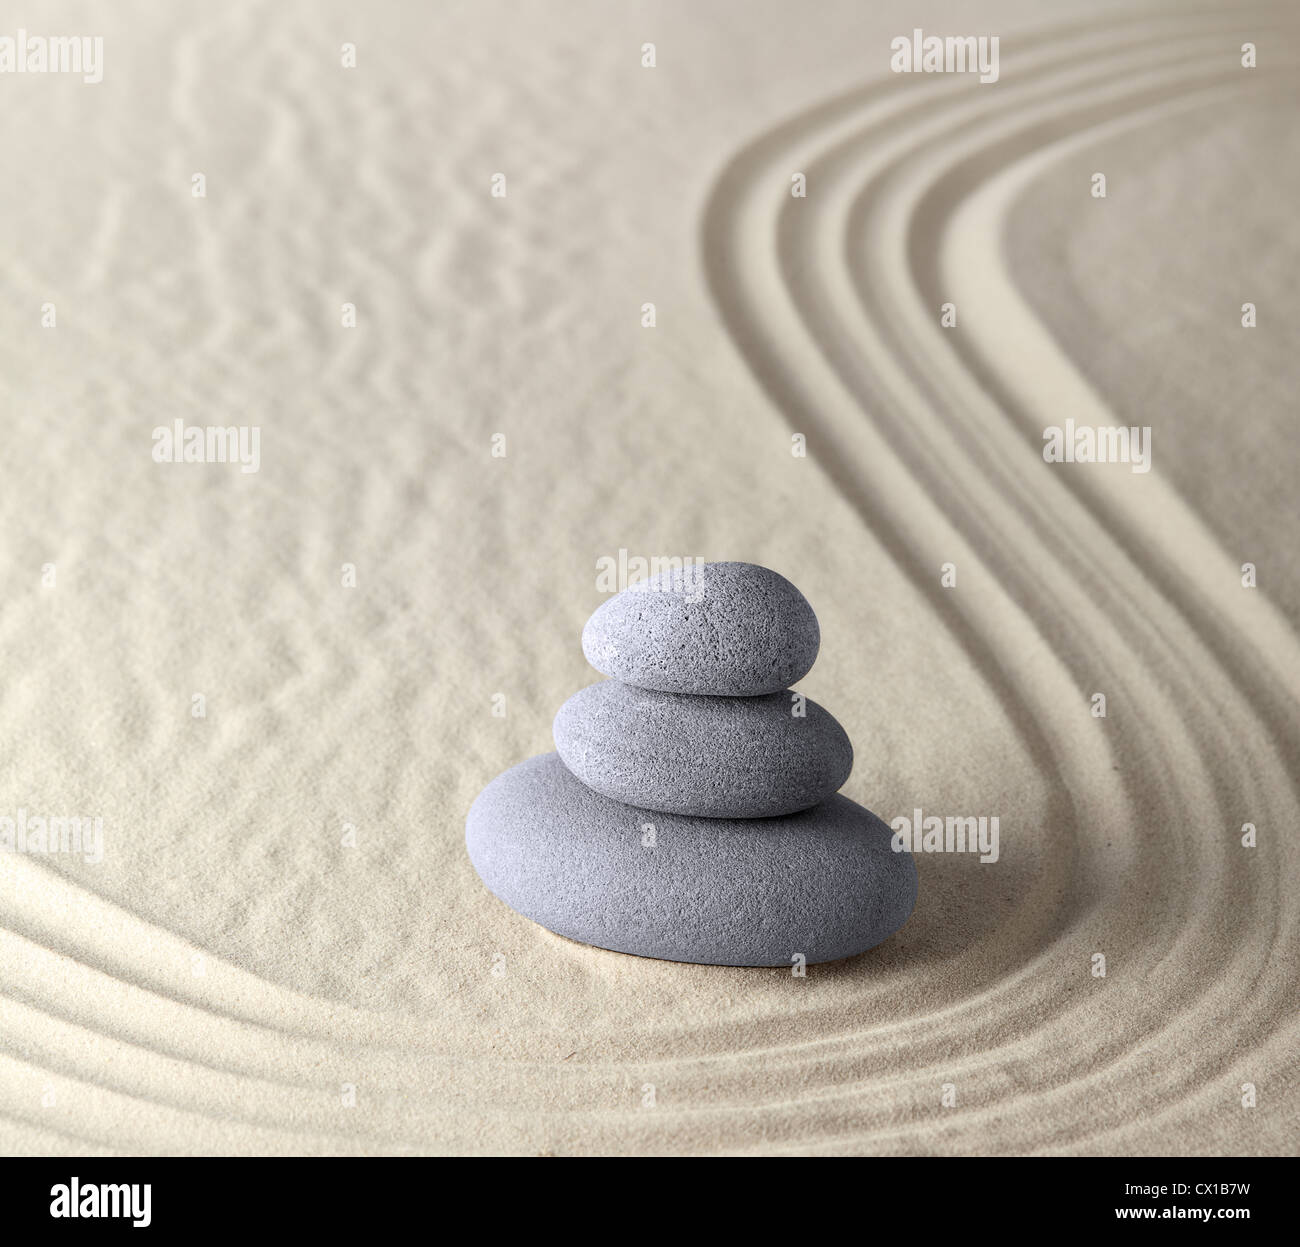 Reinheit und Klarheit zu balancieren, Felsen und Sand in den japanischen Zen-Garten Meditation Steinen für Konzentration und Entspannung Stockfoto